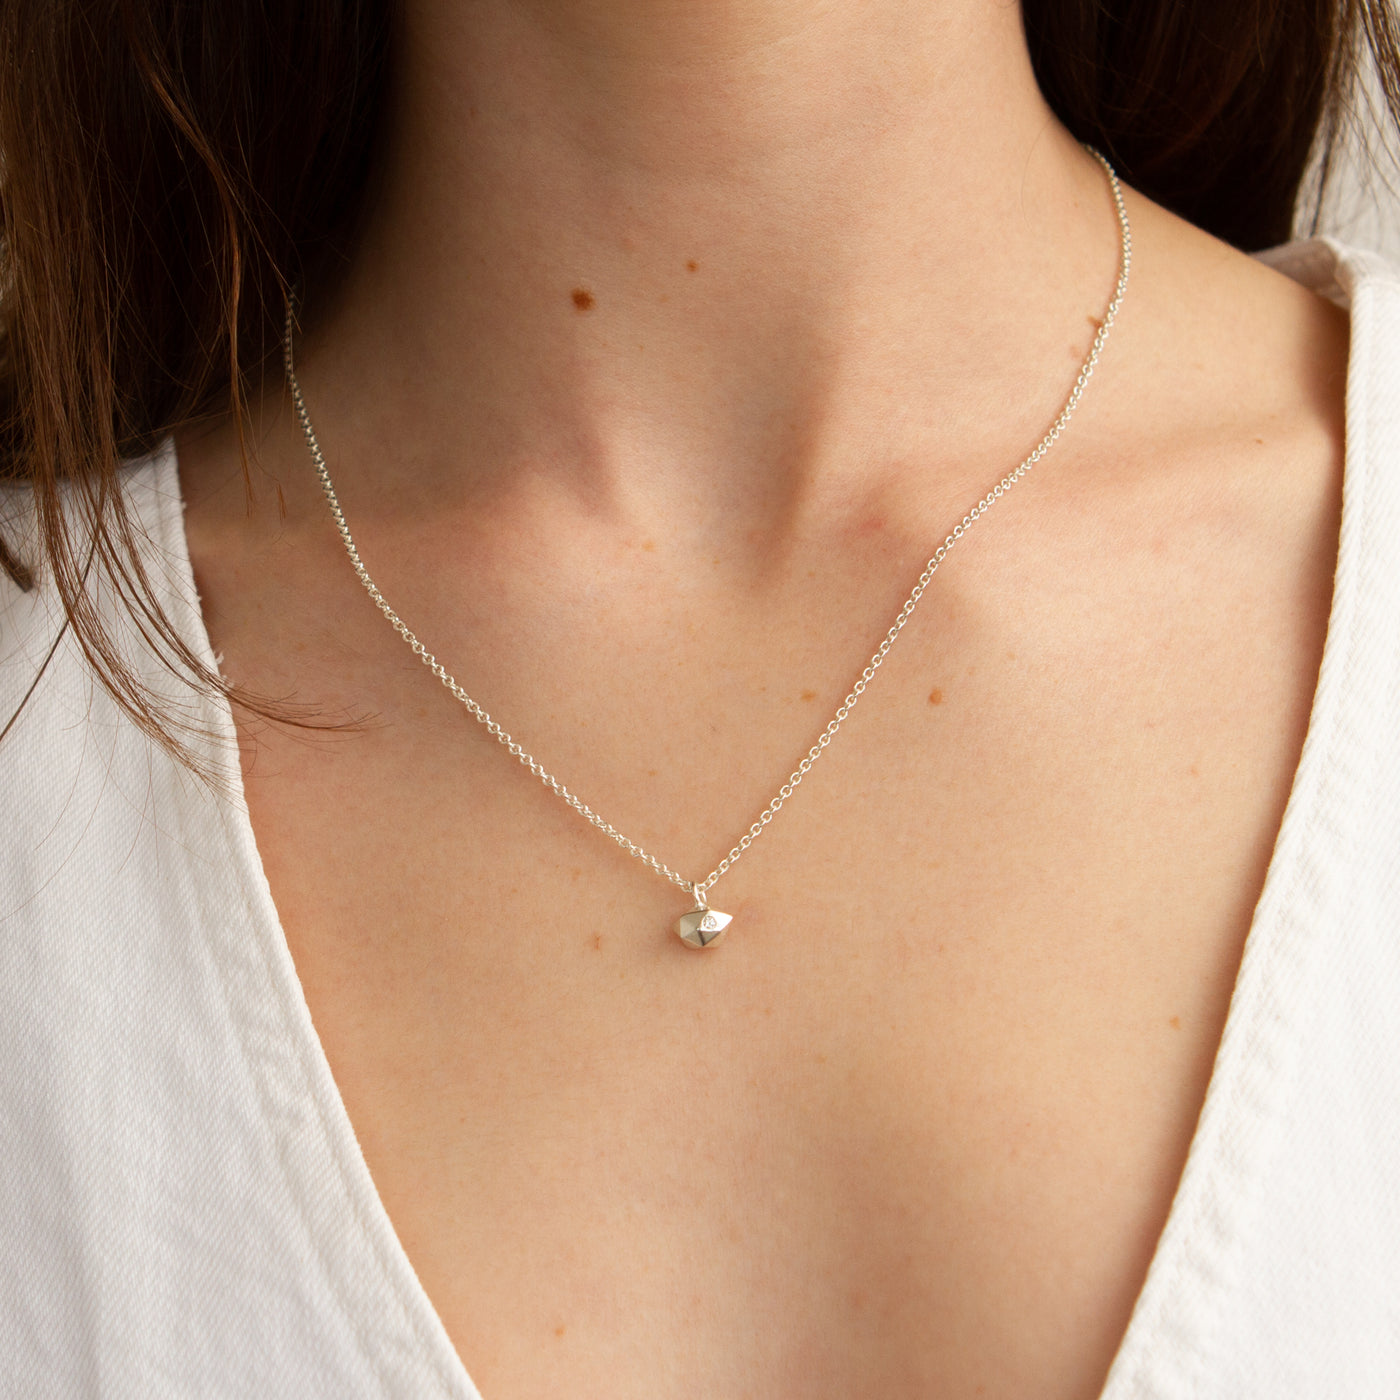 Silver Tiny Fragment Diamond Necklace modeled on a neck